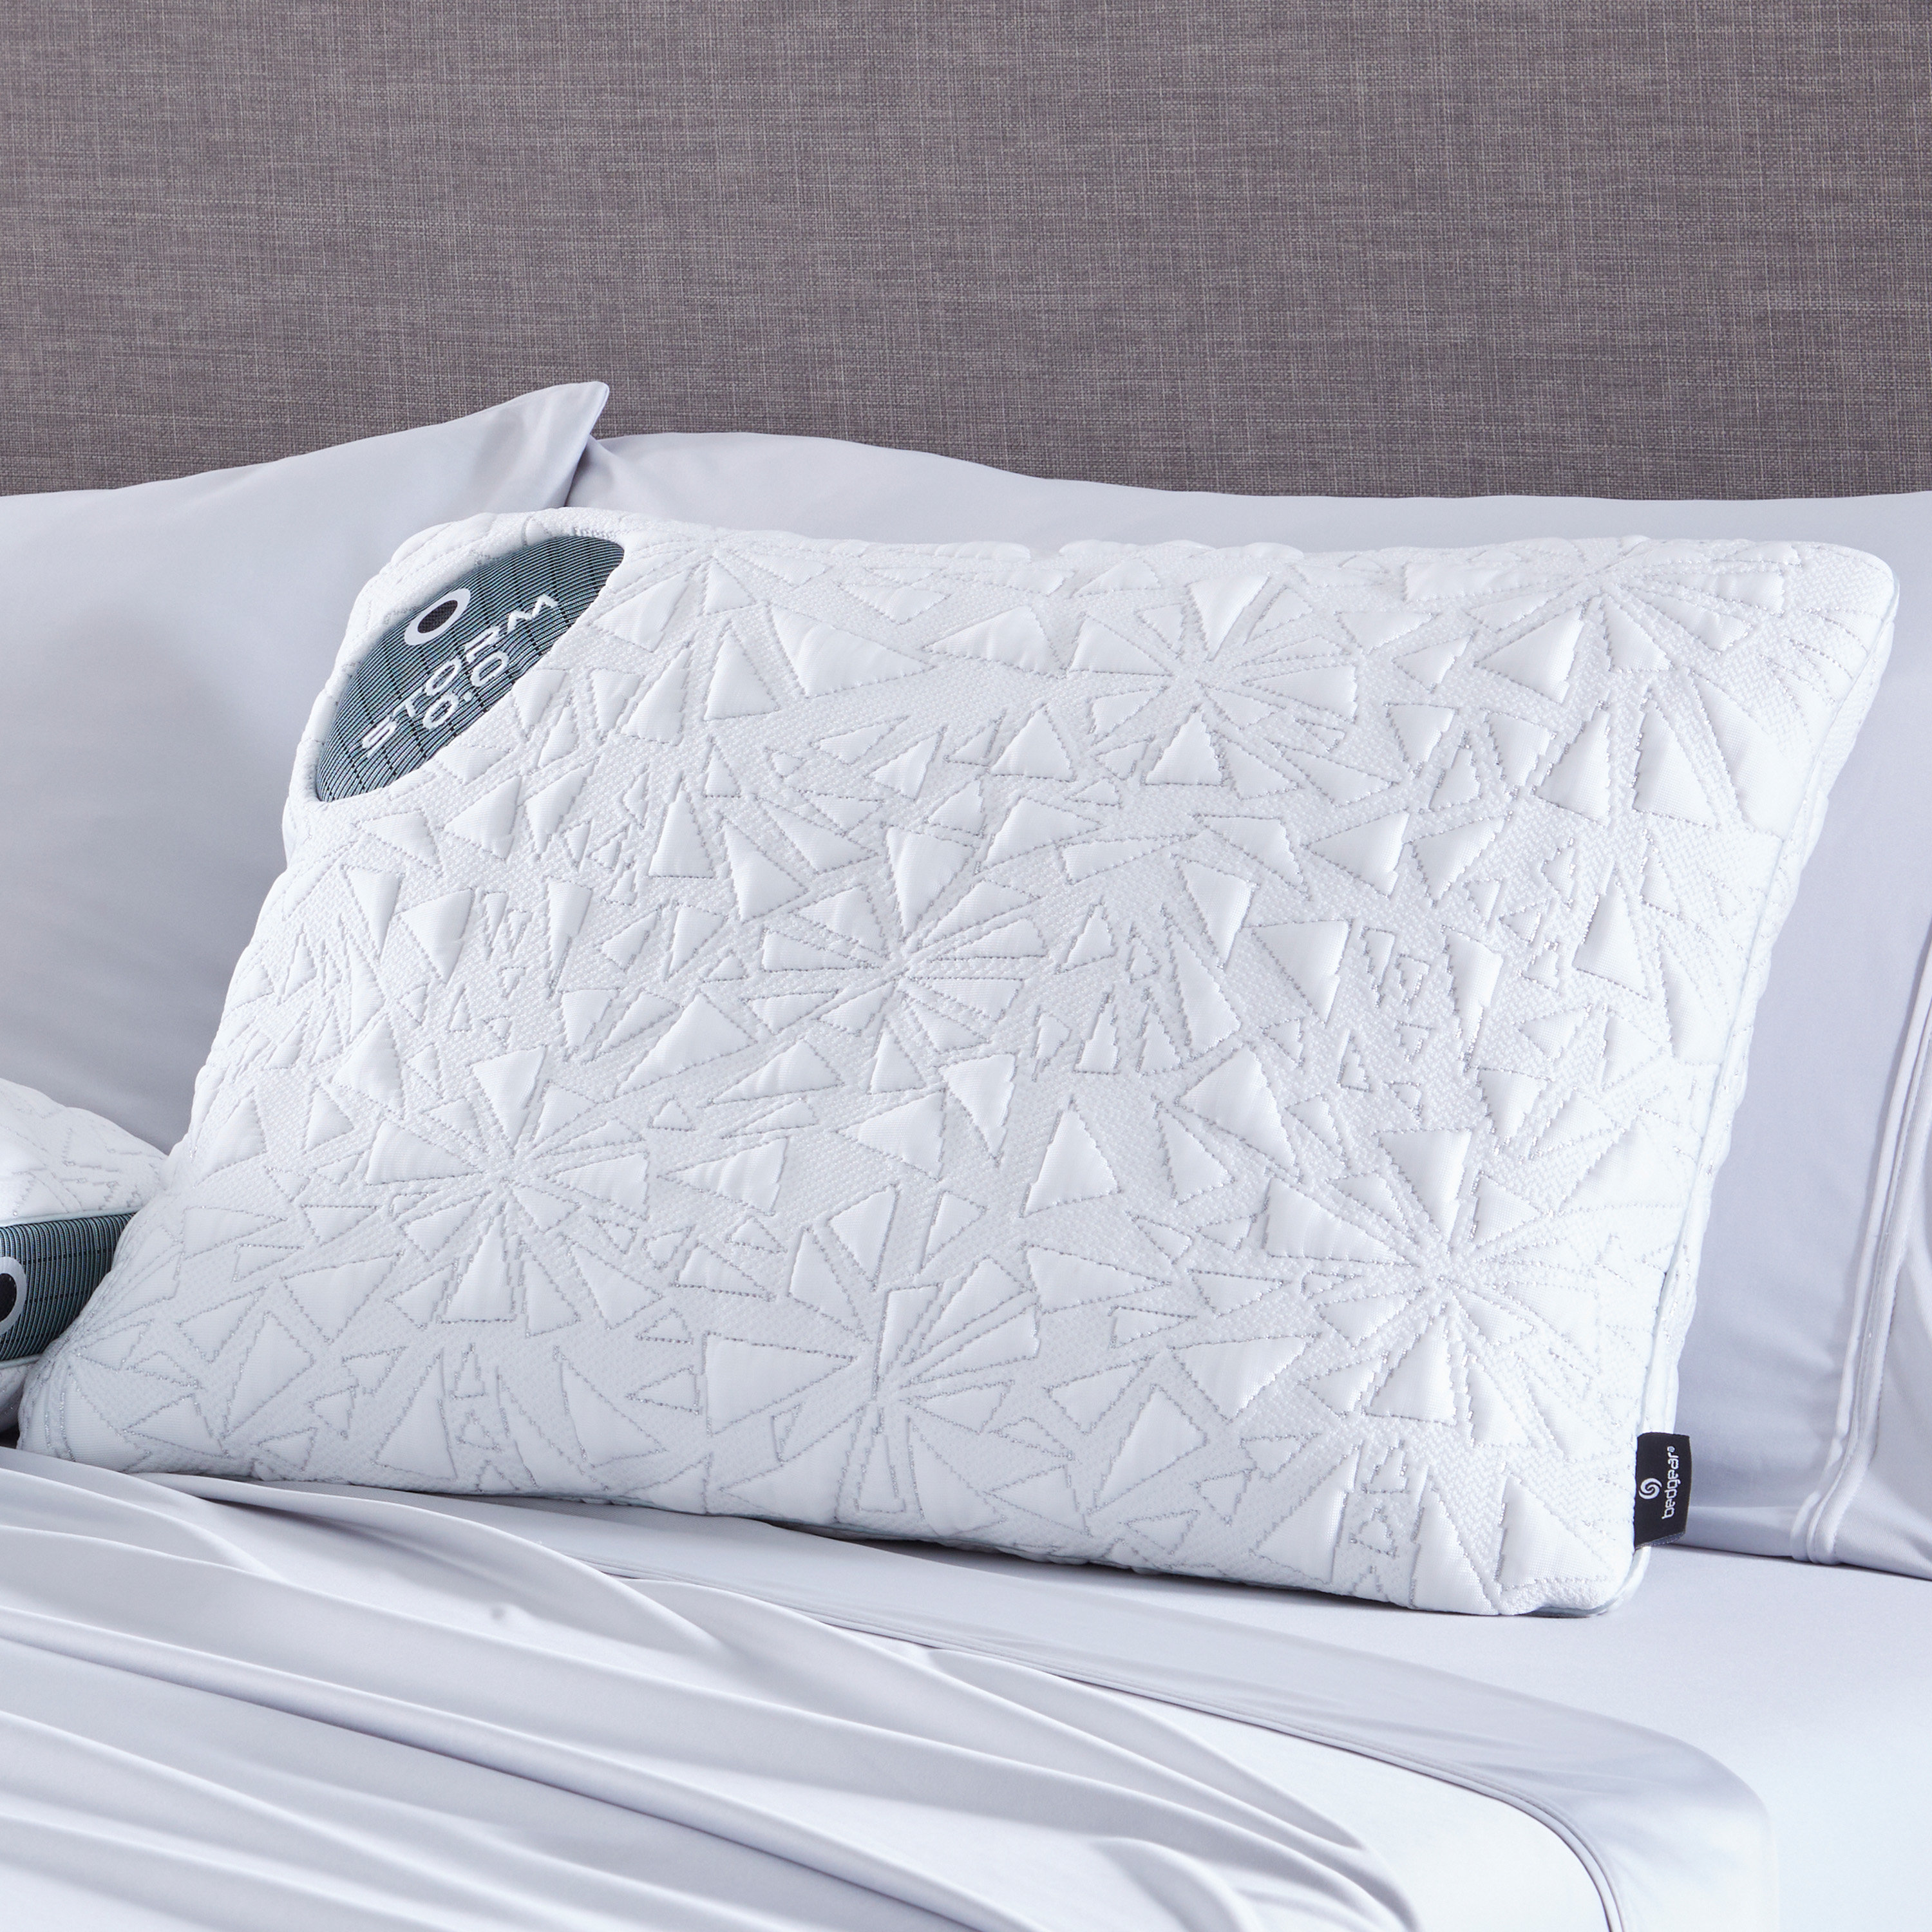 https://assets.wfcdn.com/im/33730487/compr-r85/2267/226743579/bedgear-storm-performance-pillow-size-00-medium-firm-support-pillow-for-warmhot-sleepers.jpg